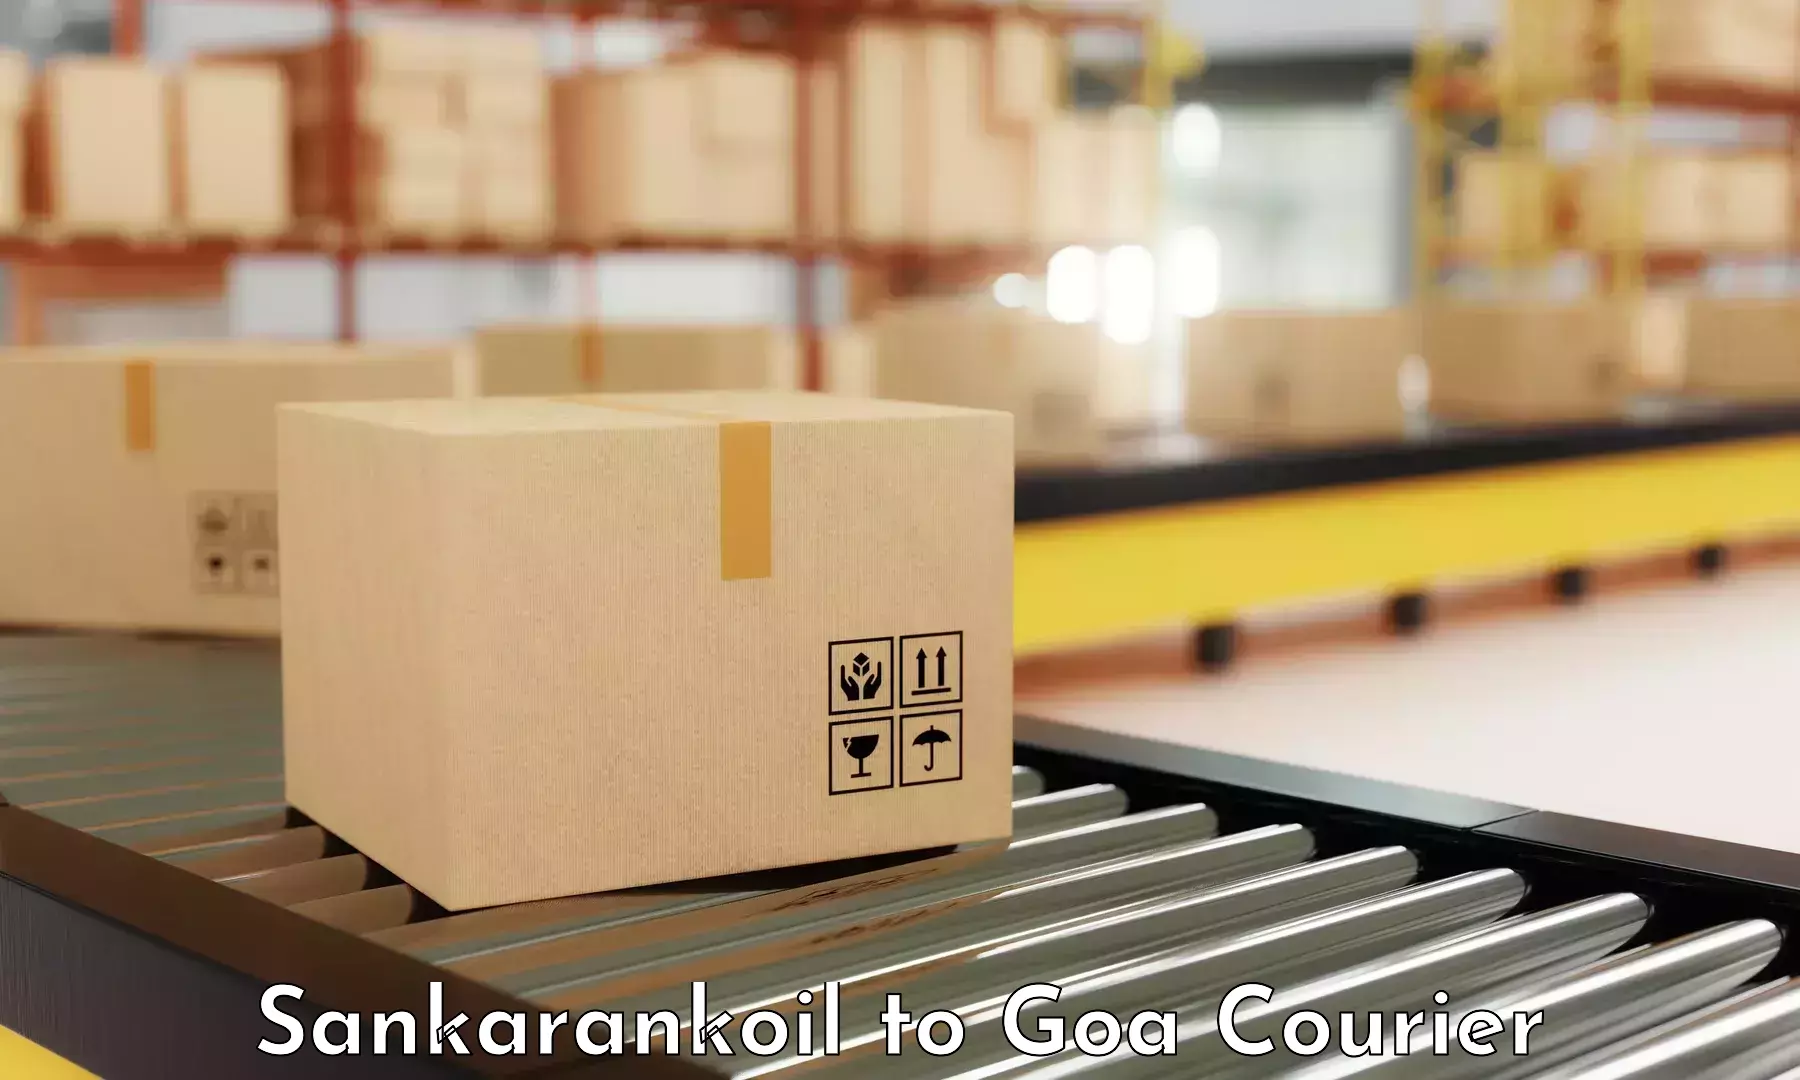 Optimized shipping services Sankarankoil to NIT Goa